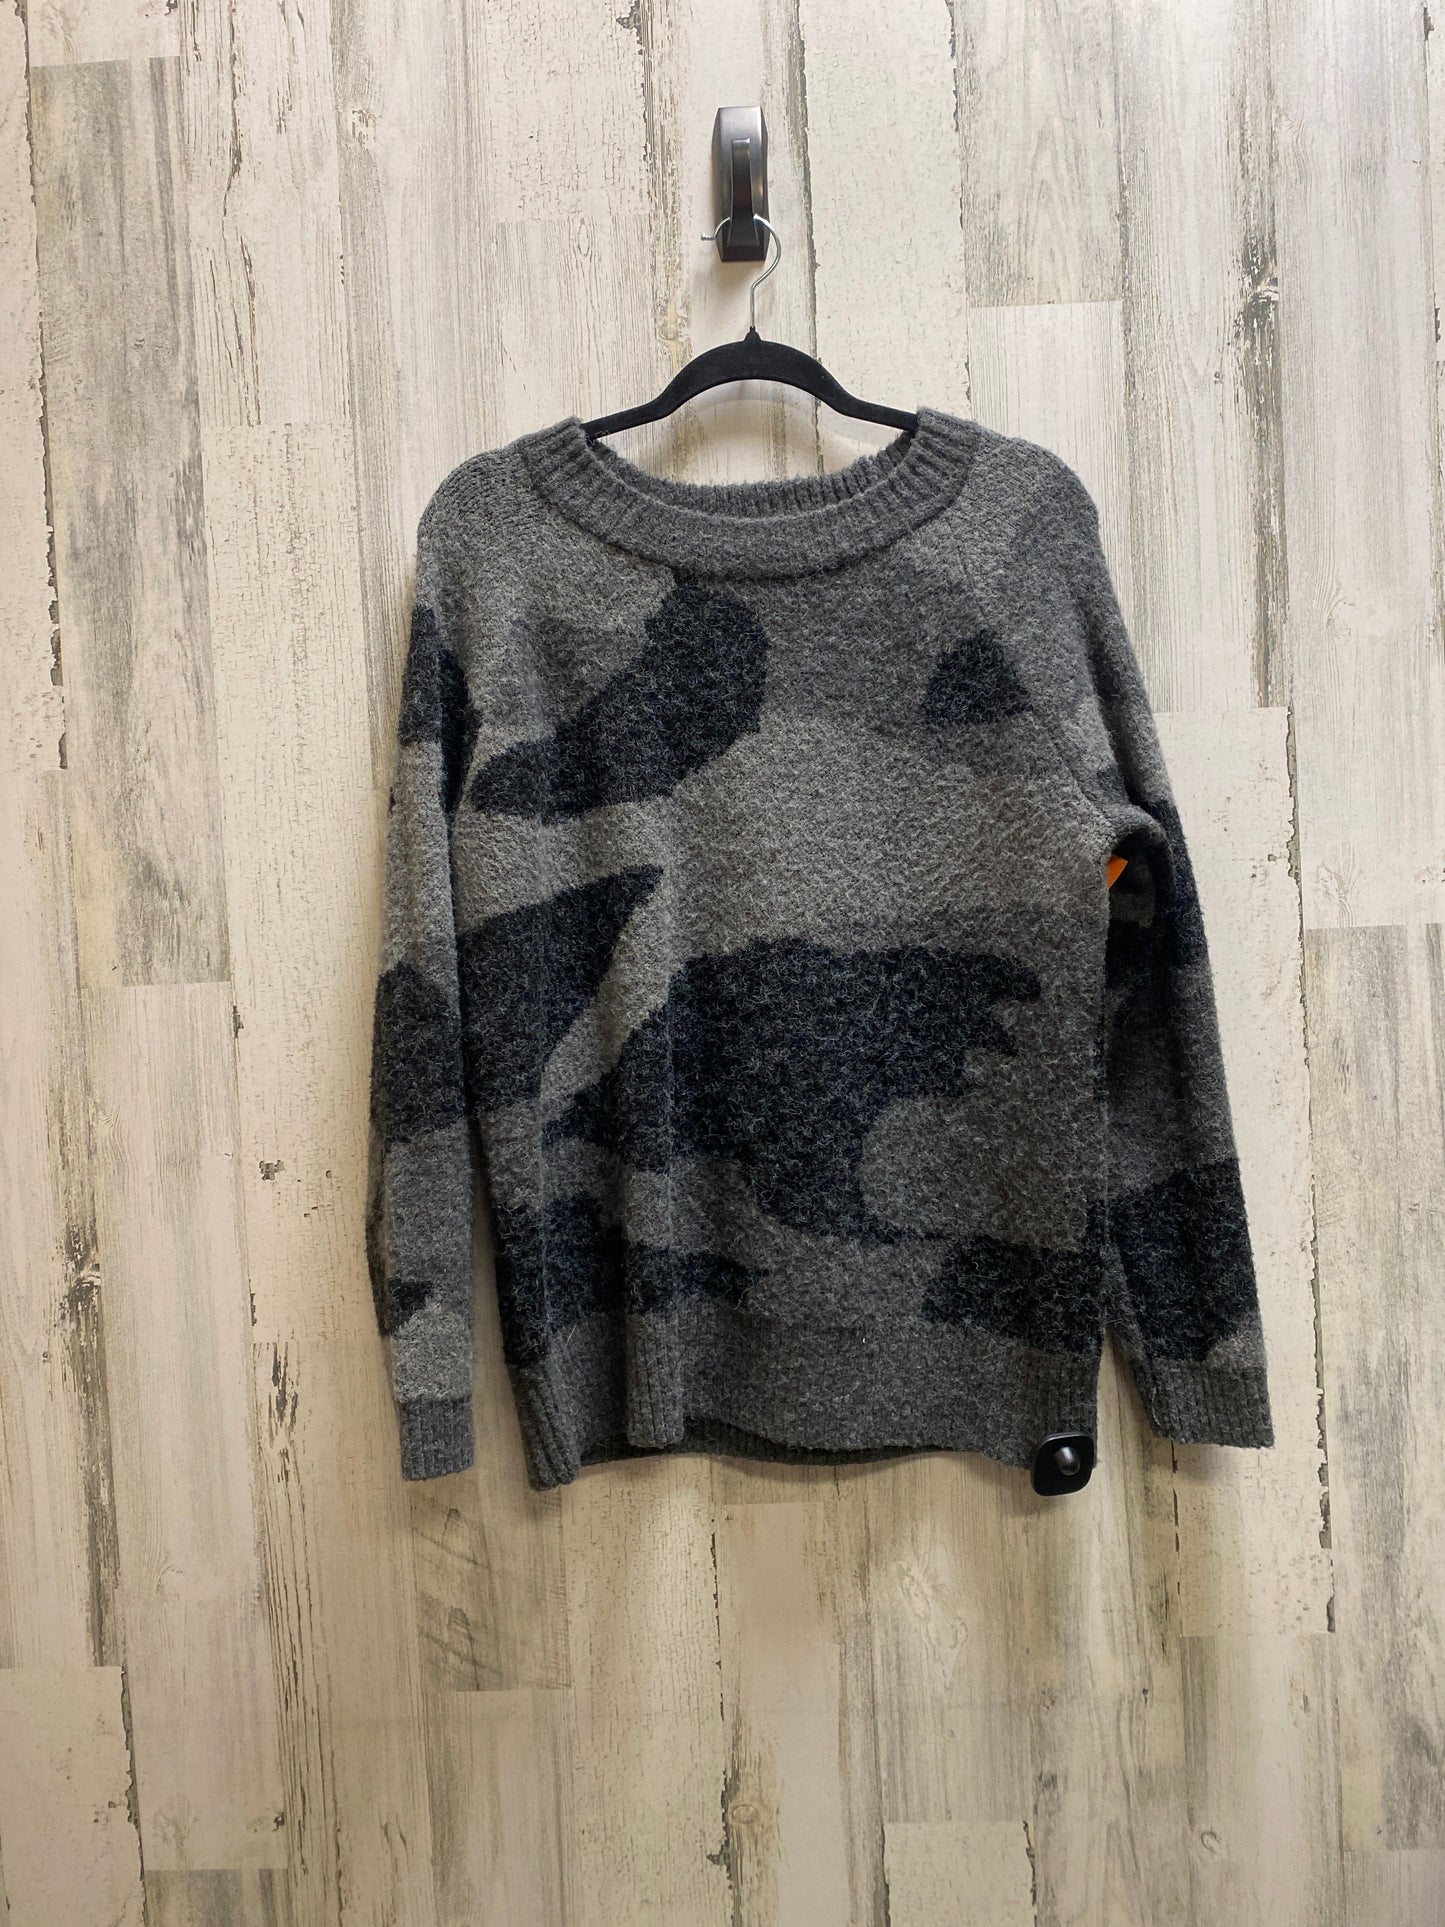 Sweater By Cyrus Knits  Size: M